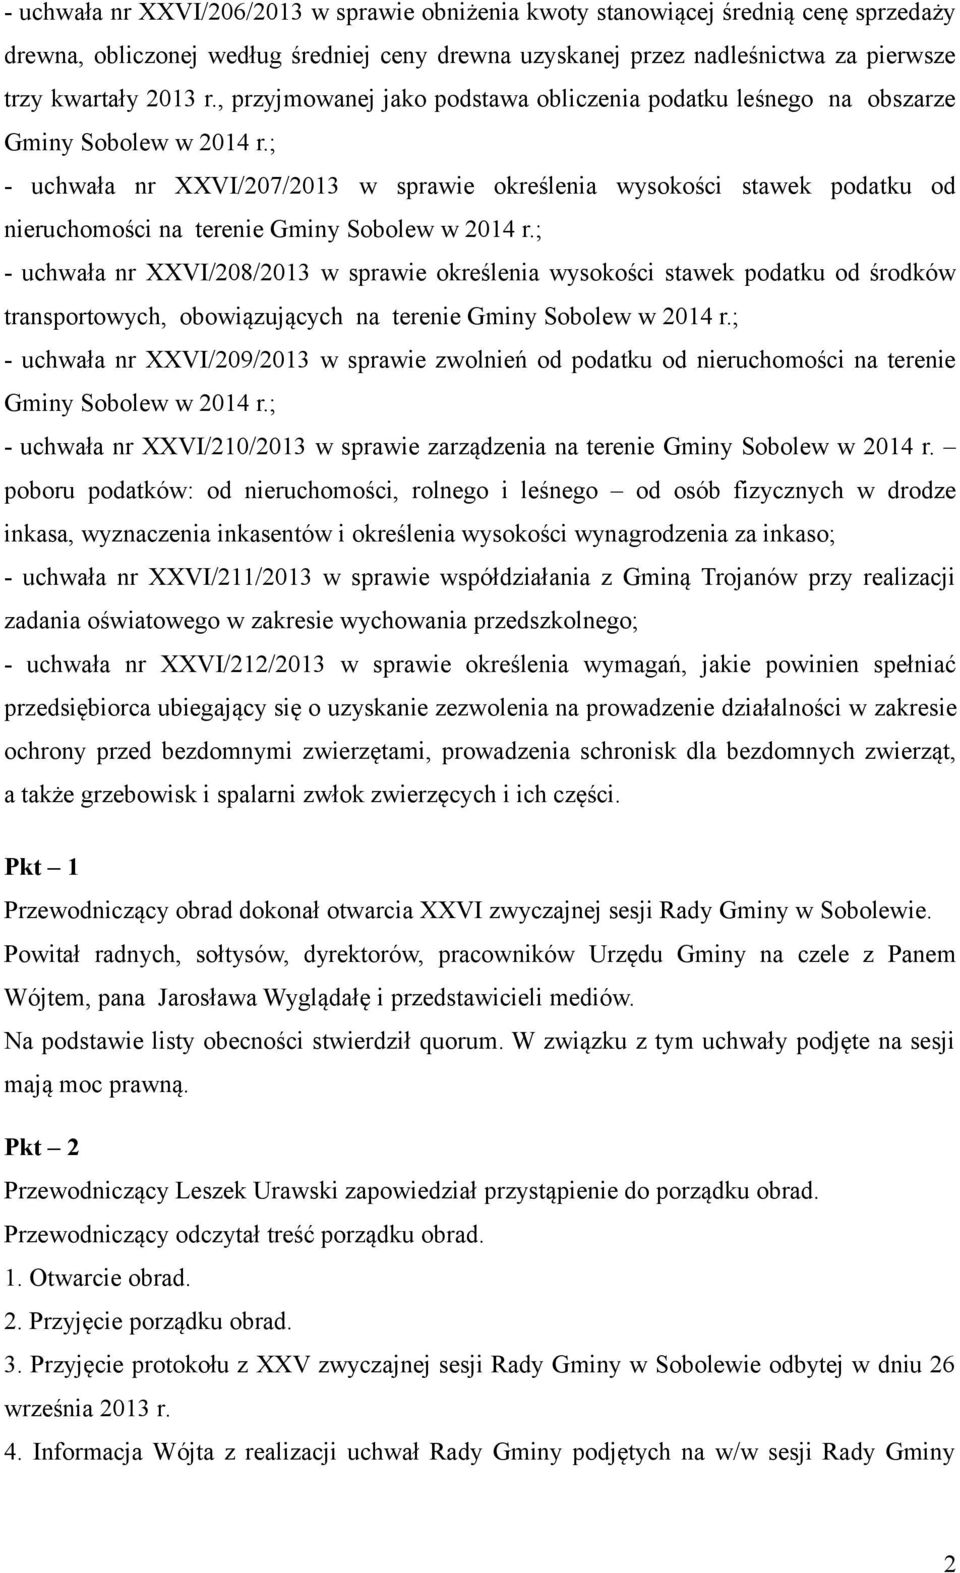 ; - uchwała nr XXVI/207/2013 w sprawie określenia wysokości stawek podatku od nieruchomości na terenie Gminy Sobolew w 2014 r.